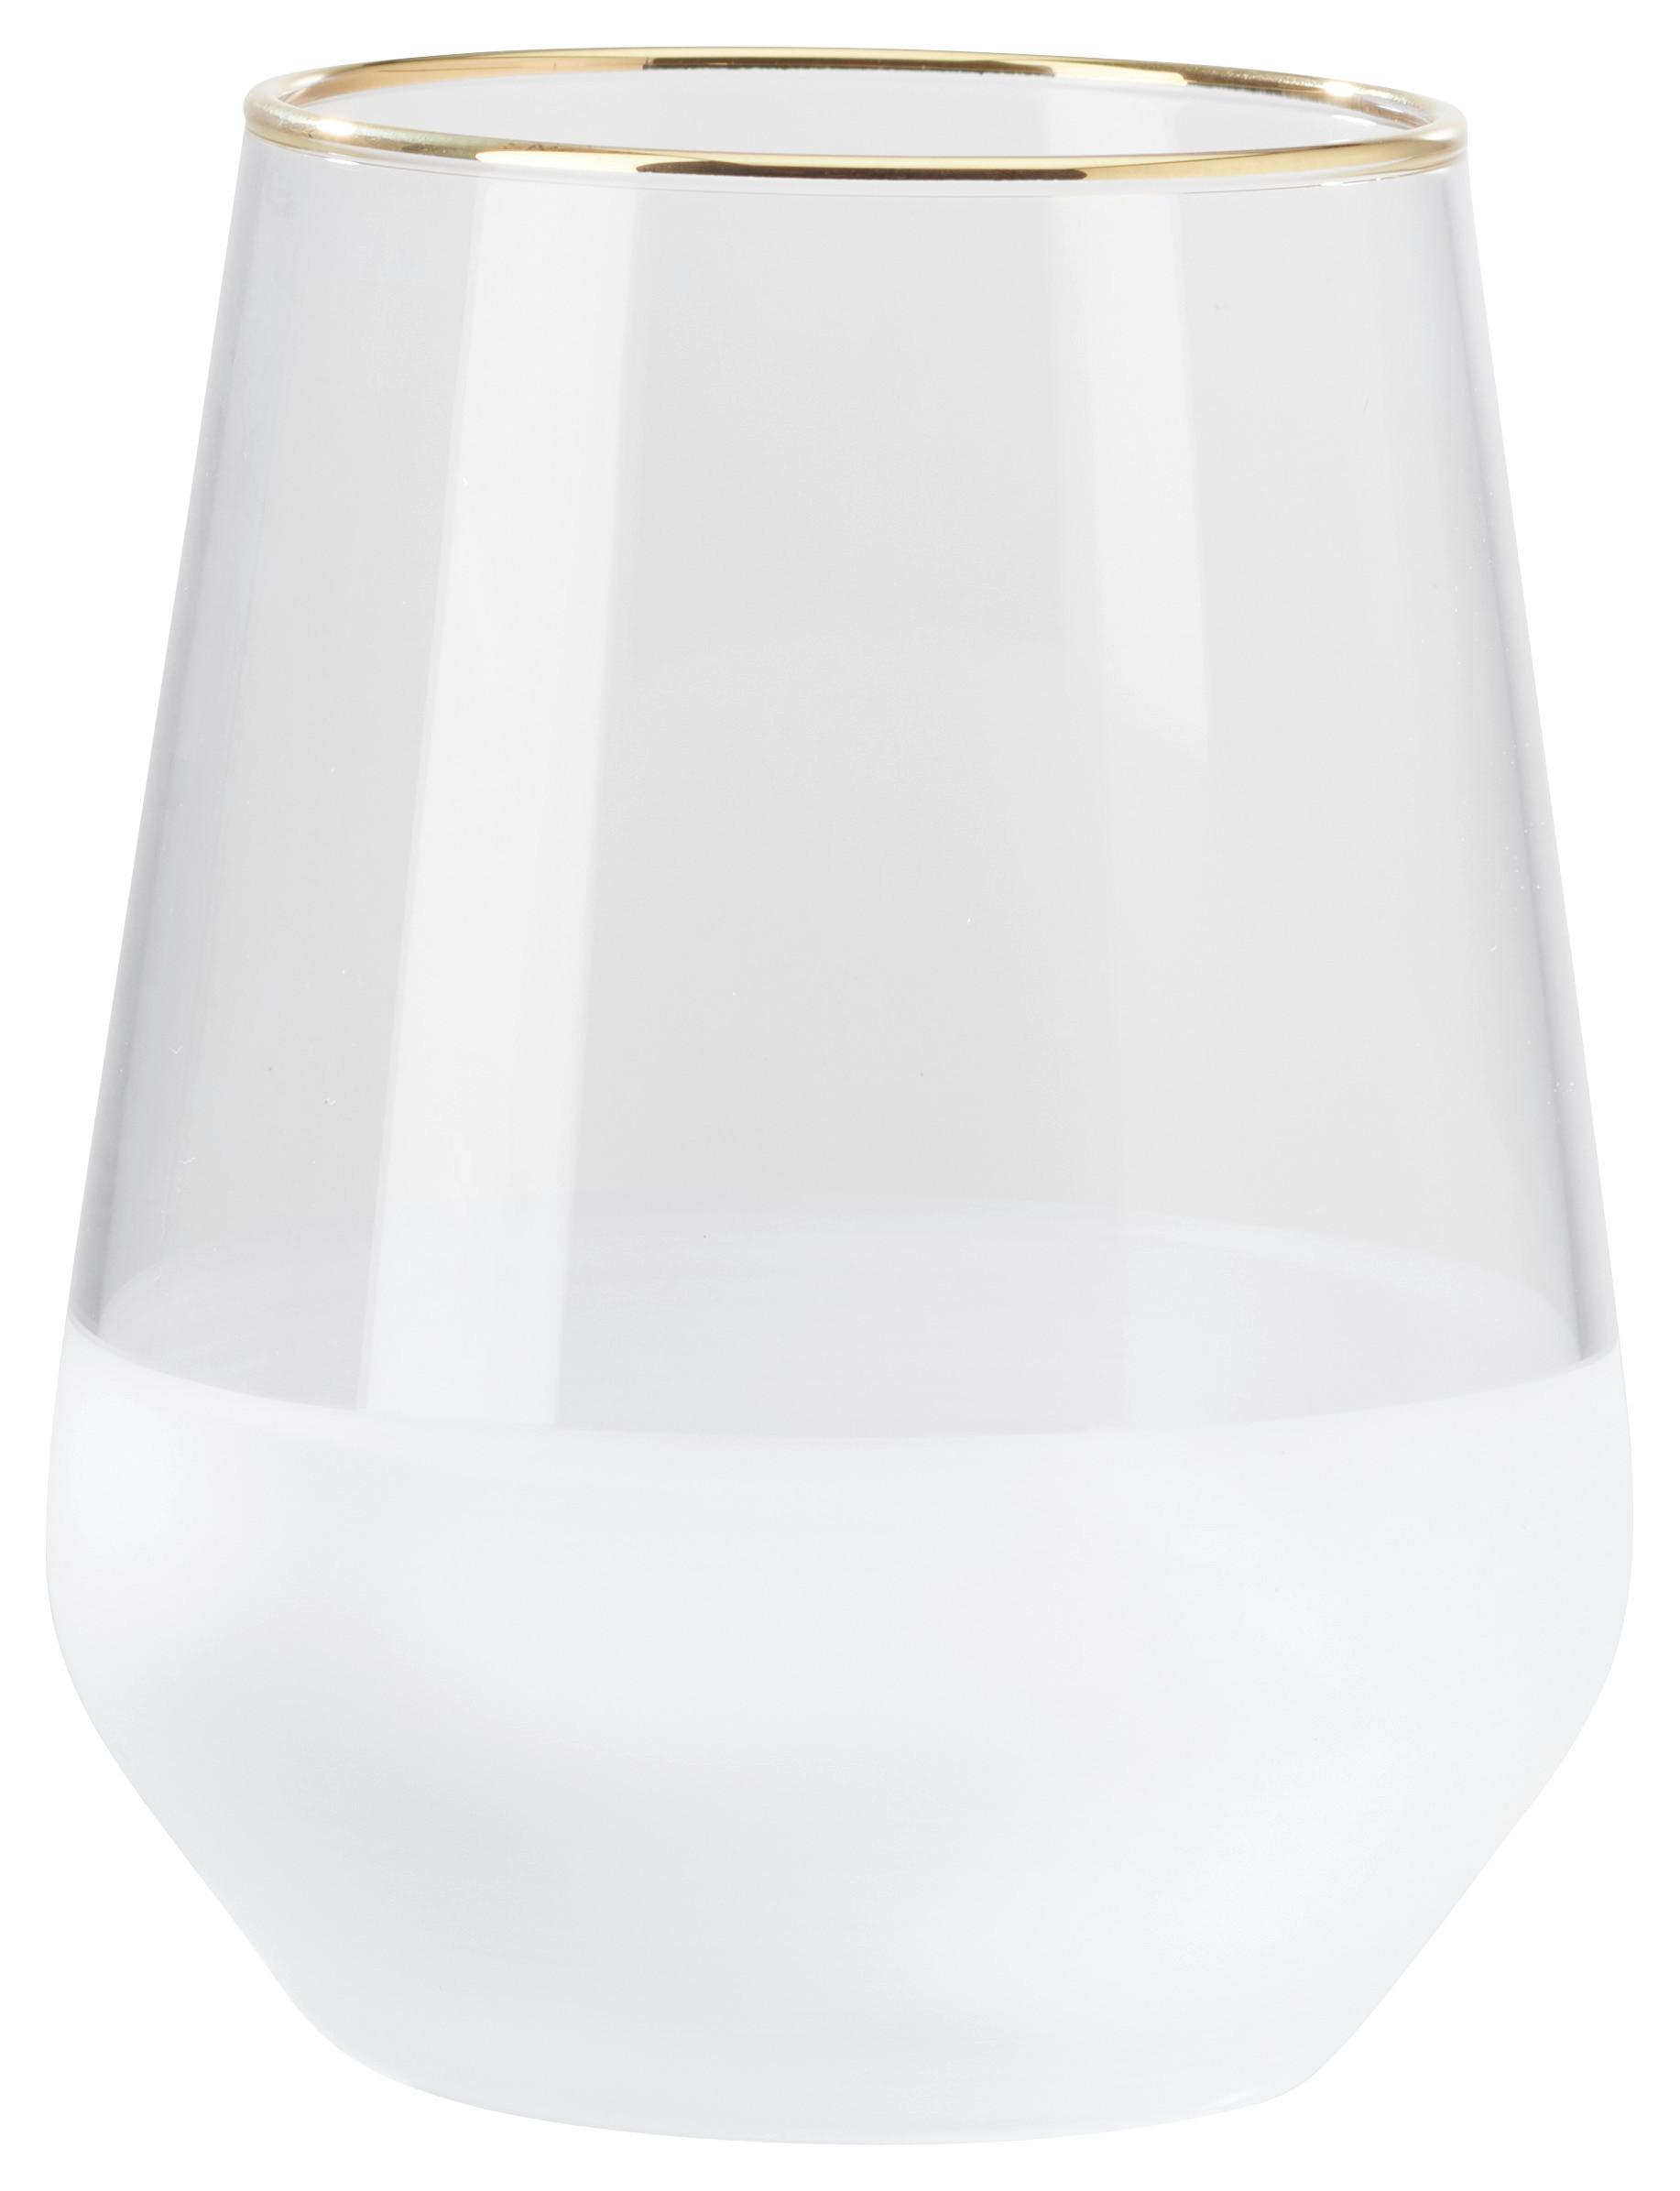 Trinkglas Goldline in Weiß ca. 425ml - Weiß, MODERN, Glas (6,8/11cm) - Premium Living